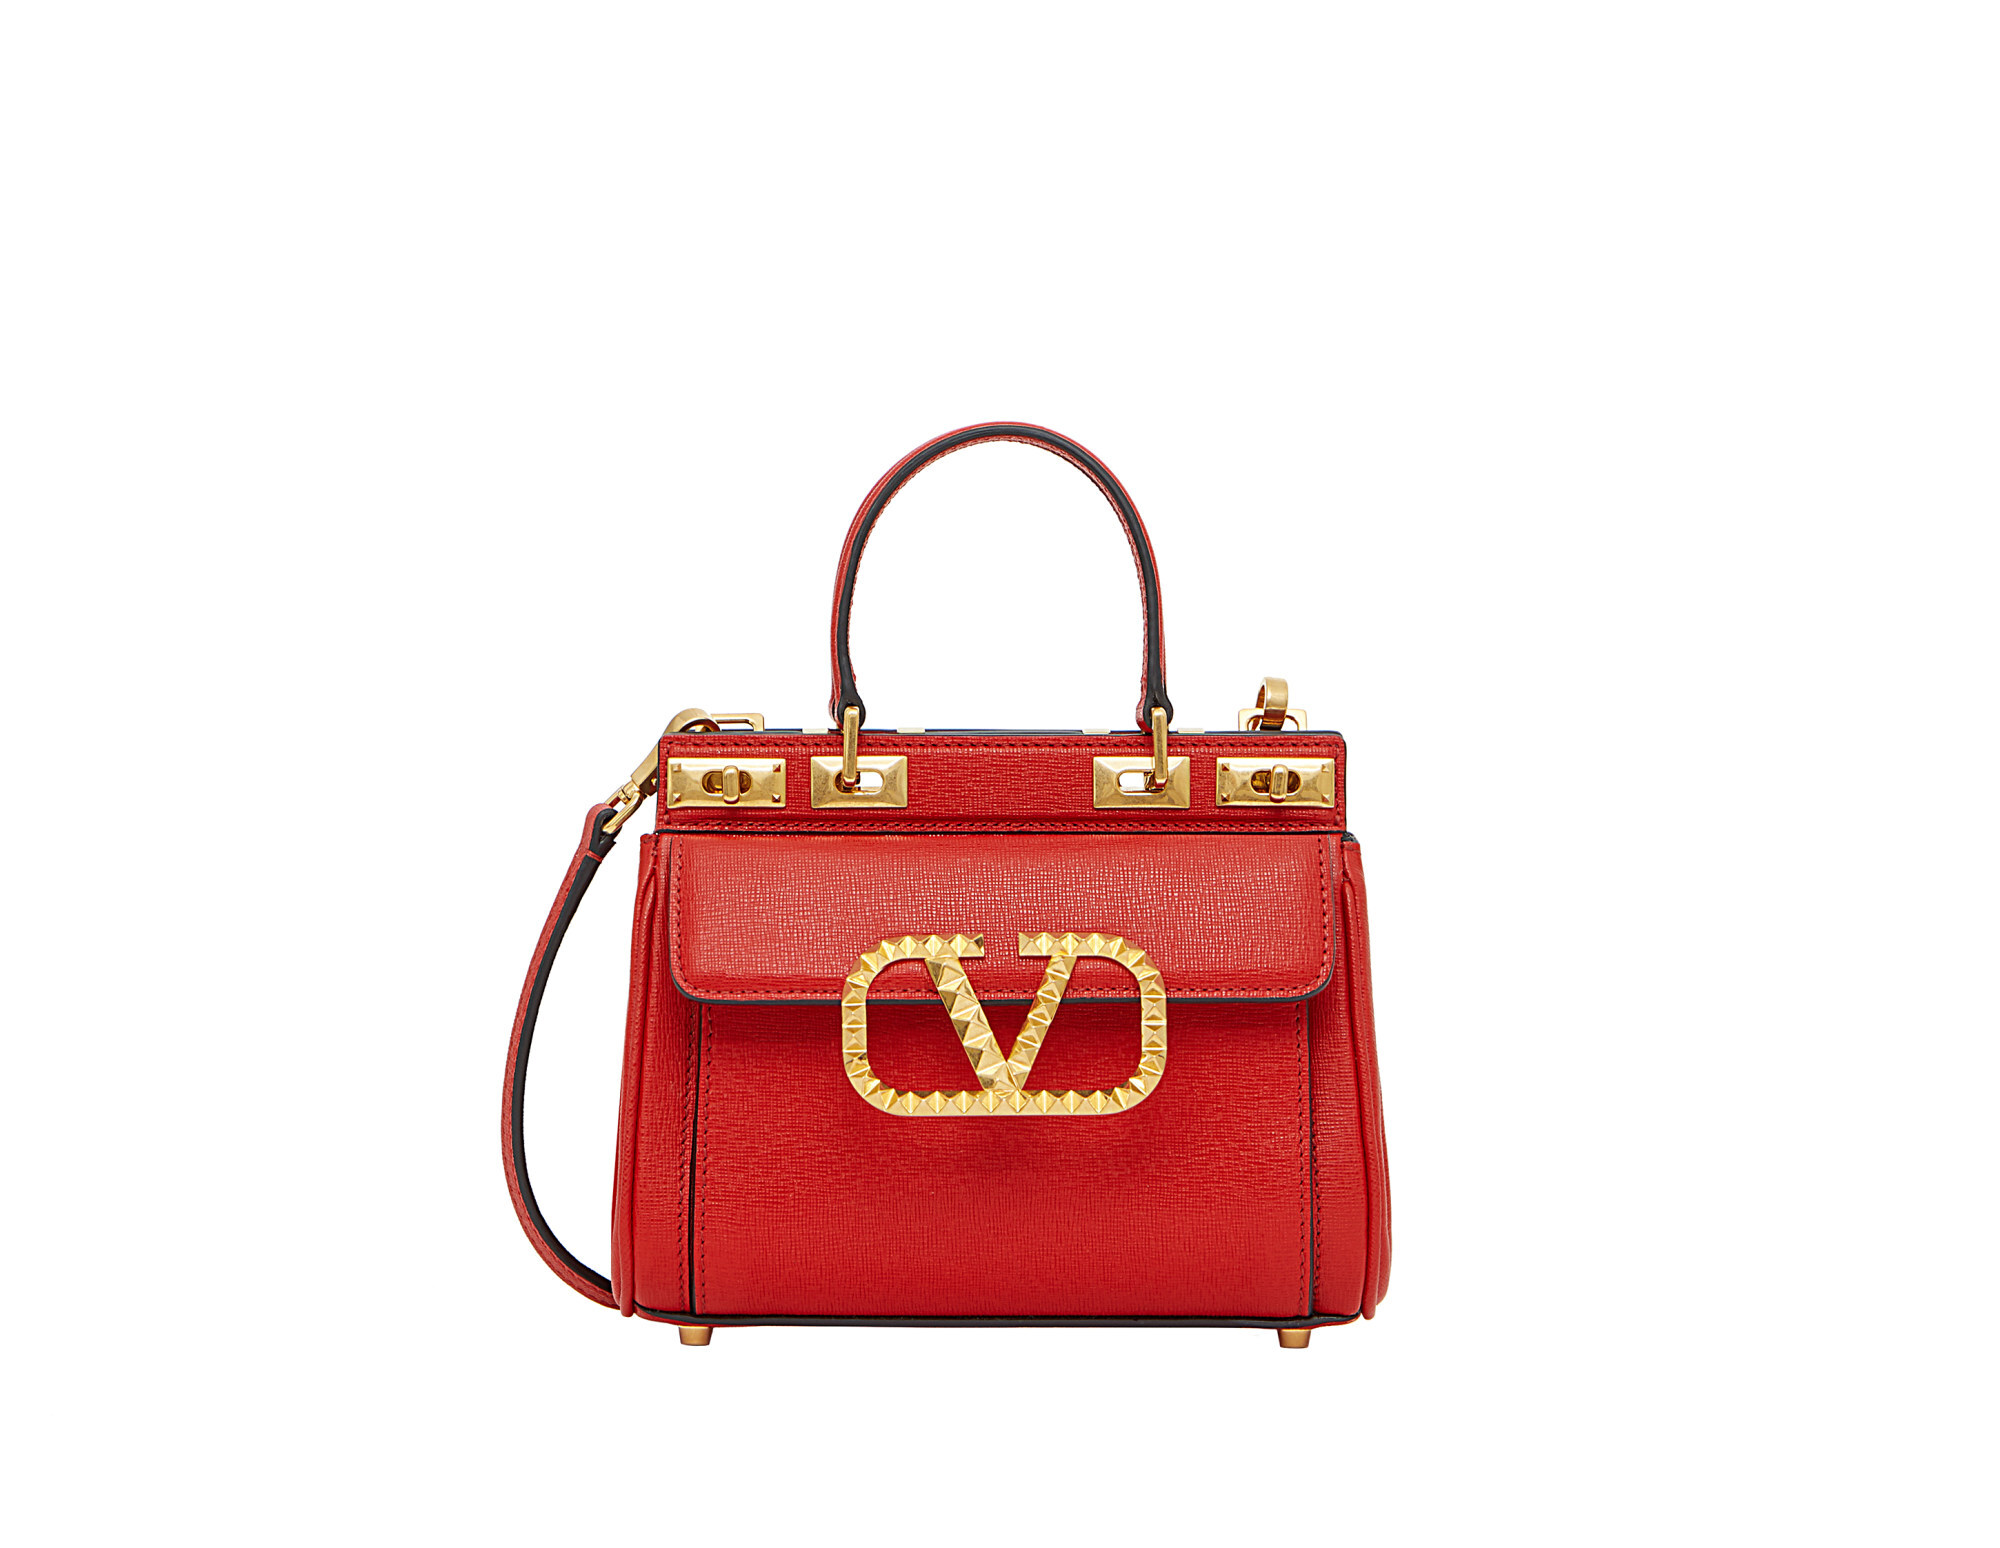 Lay and Jessica Jung Present Valentino's Mini Locò Bag - EnVi Media